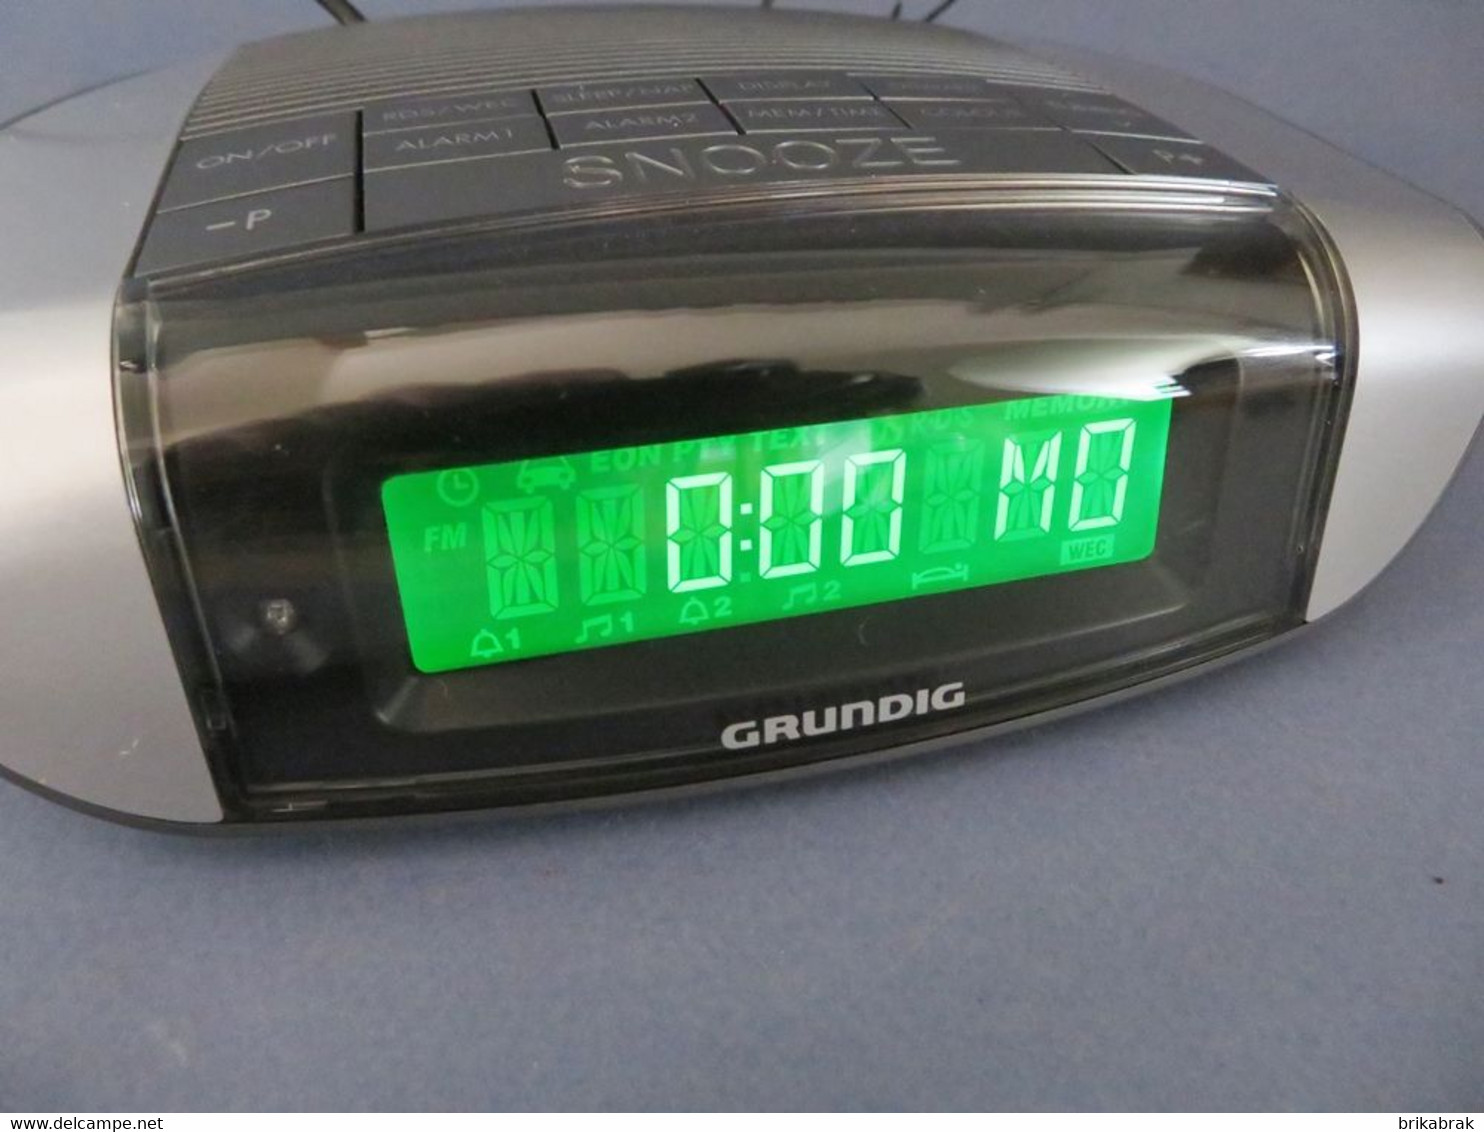 RADIO REVEIL GRUNDIG + Horlogerie Clock radio